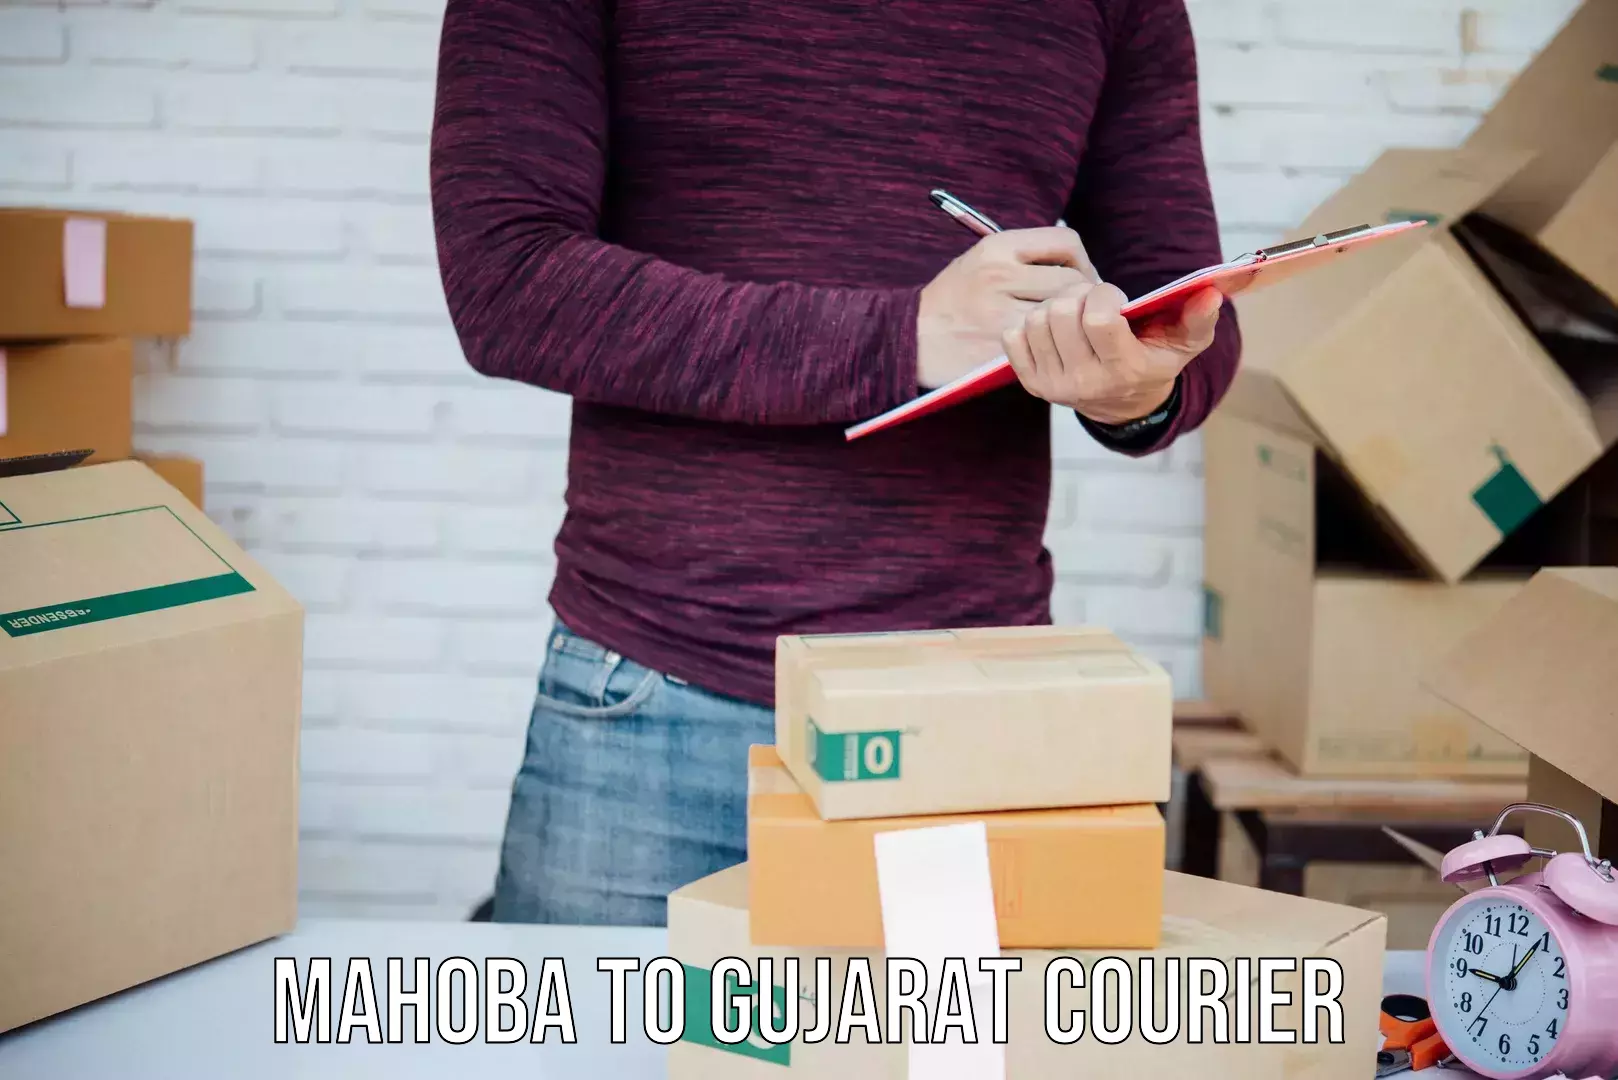 Courier service innovation Mahoba to Mahesana